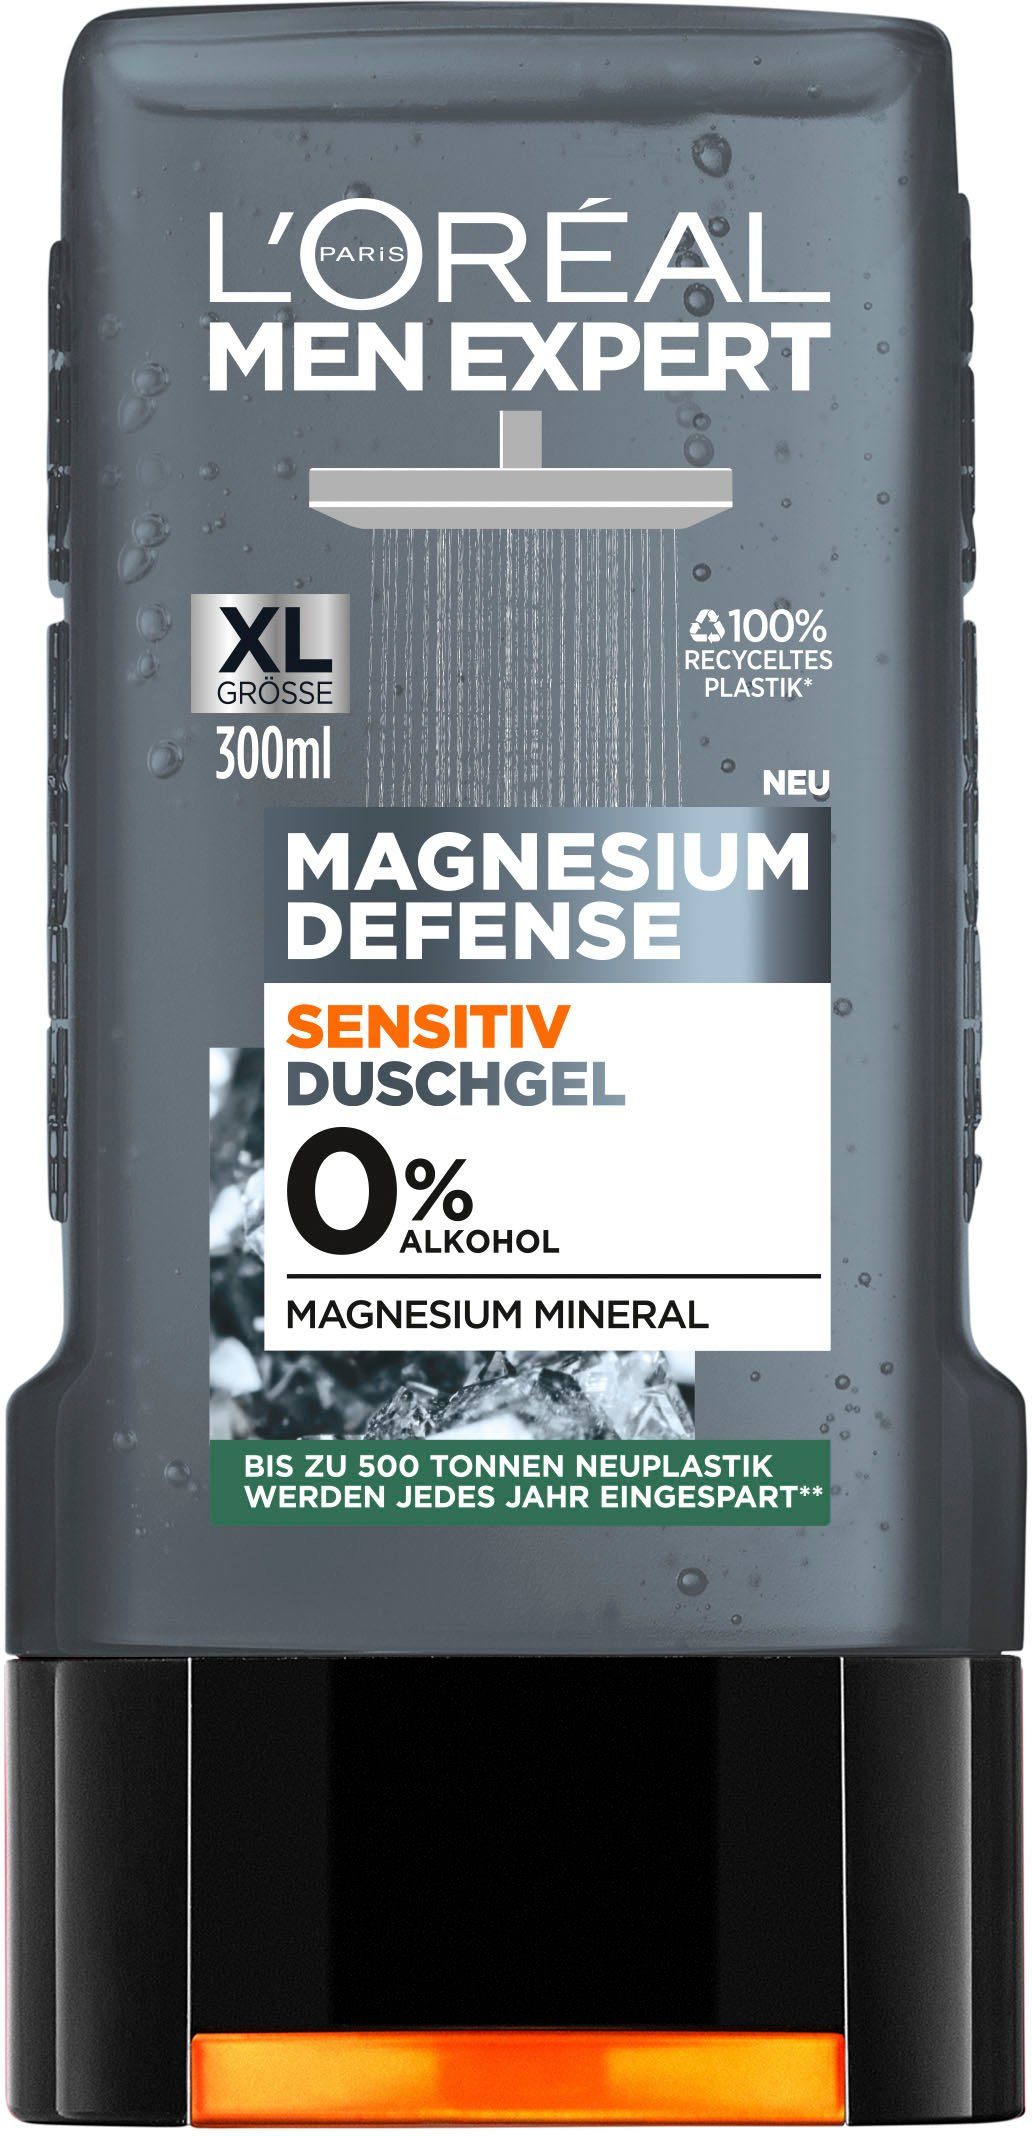 L'ORÉAL PARIS MEN EXPERT Duschgel Magnesium Defense Sensitiv | Duschgele